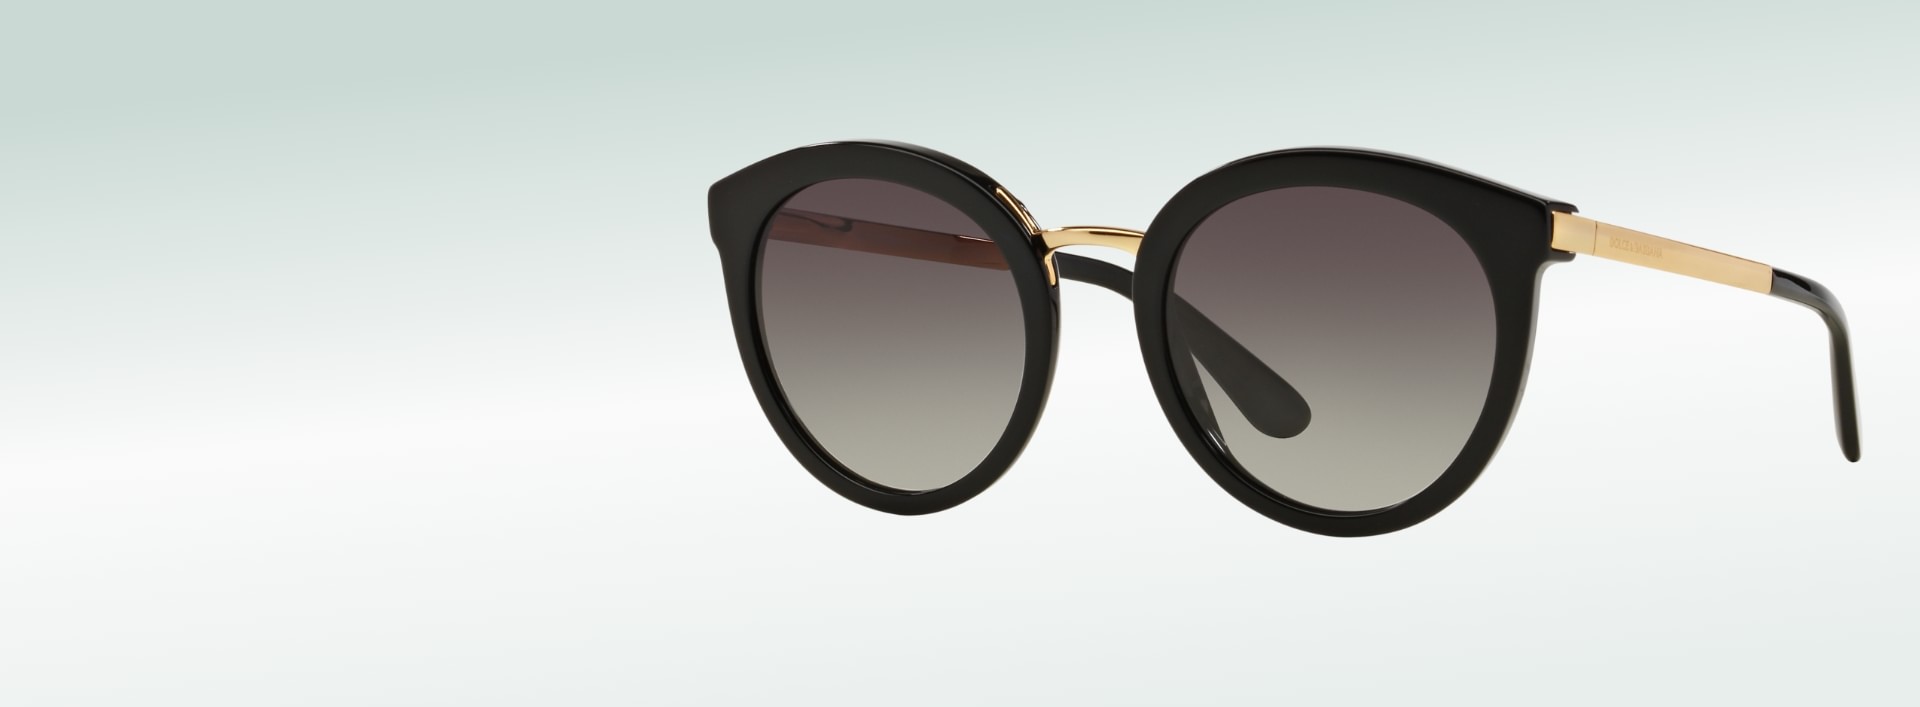 Moderne Sonnenbrillen in schönsten Designs